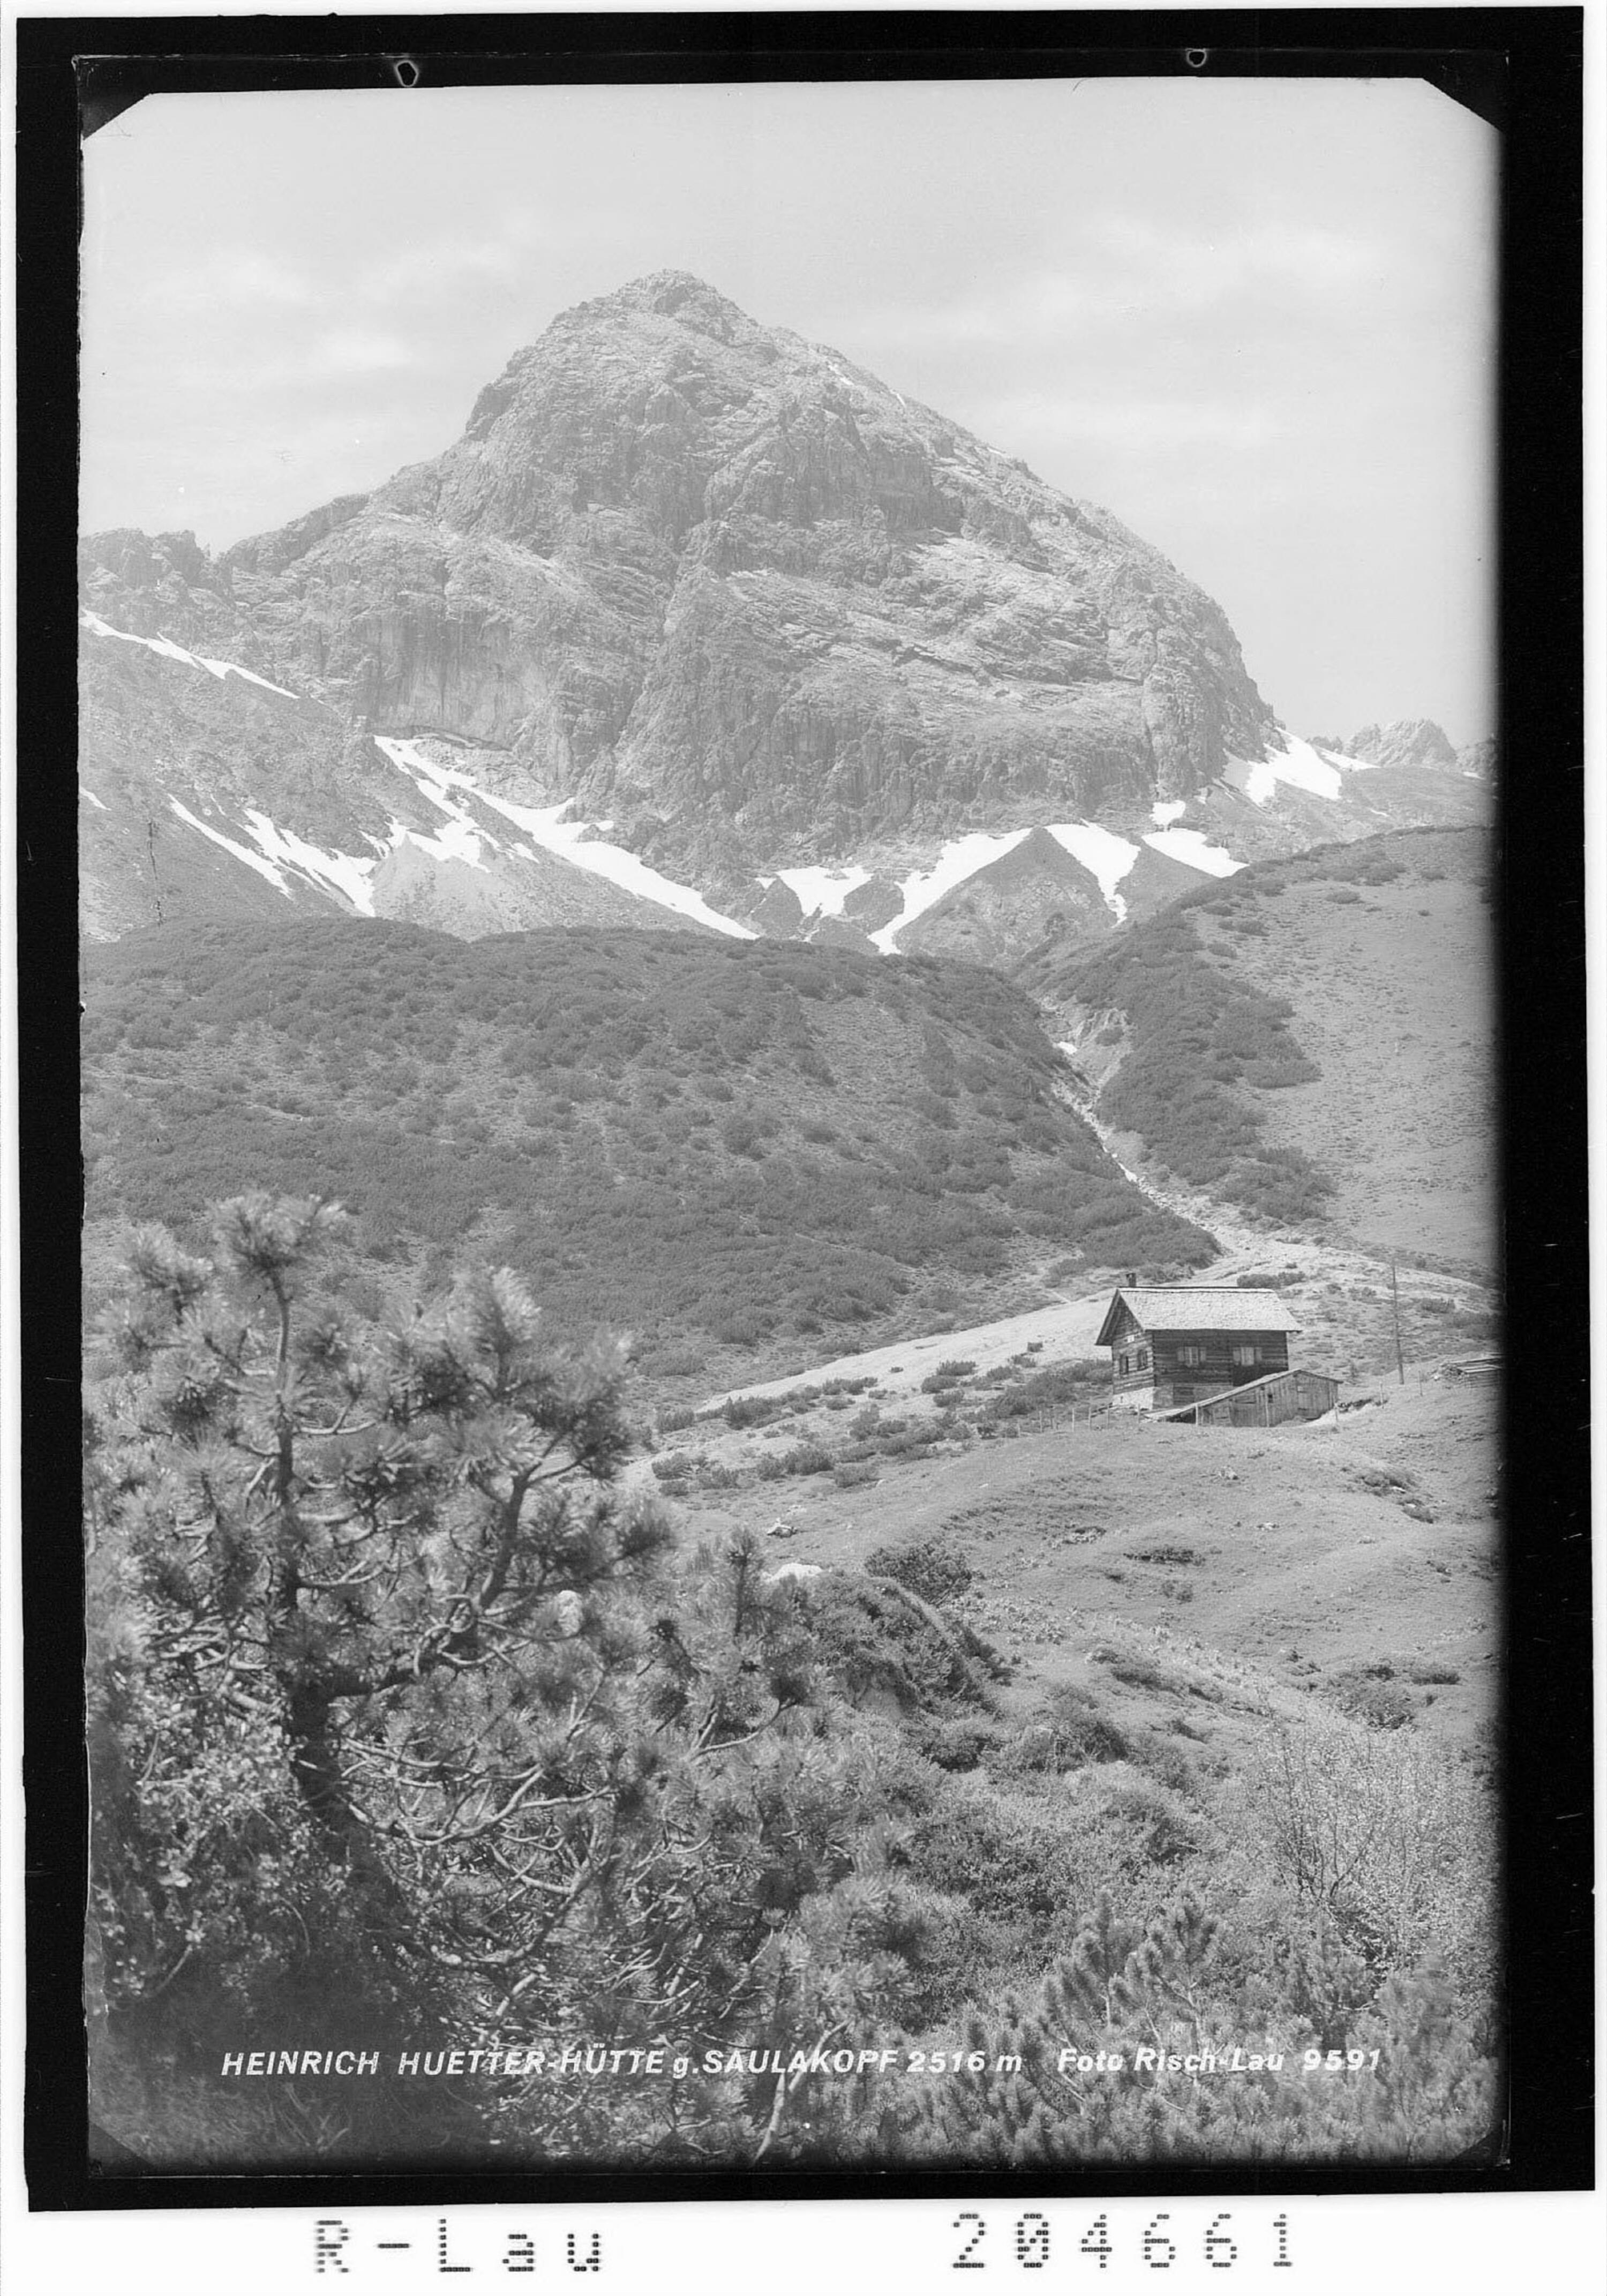 Heinrich Hueter Hütte gegen Saulakopf 2516 m></div>


    <hr>
    <div class=